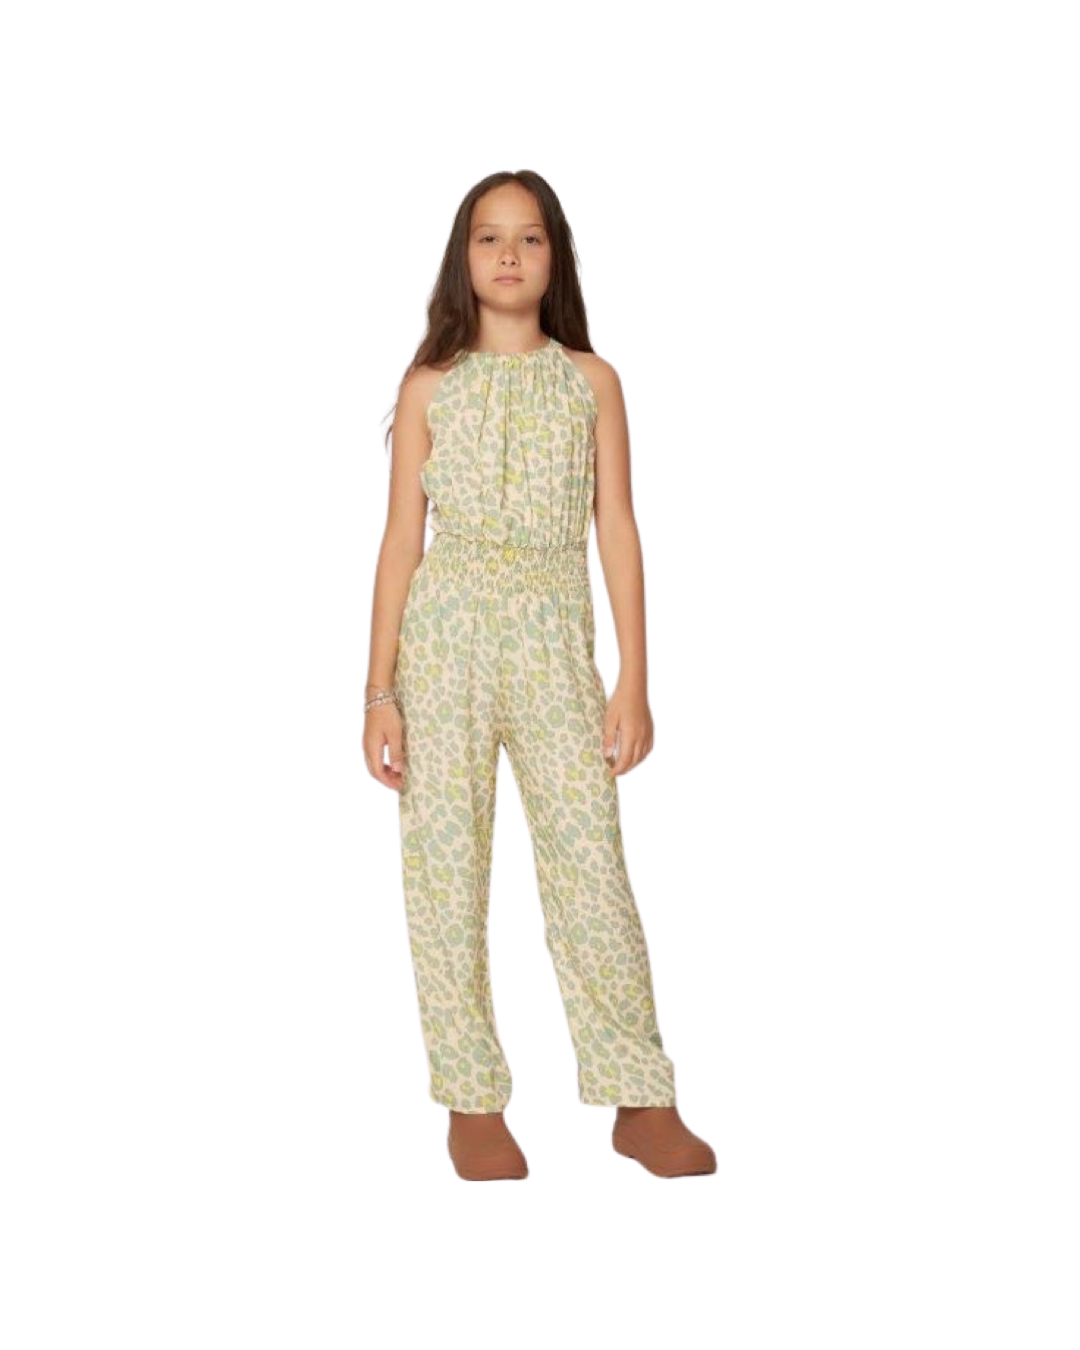 pantalone , Tuta maculato con elastico in vita  per bambina da 8anni a 16anni Y-Clù Y19146 - BabyBimbo 0-16, abbigliamento bambini